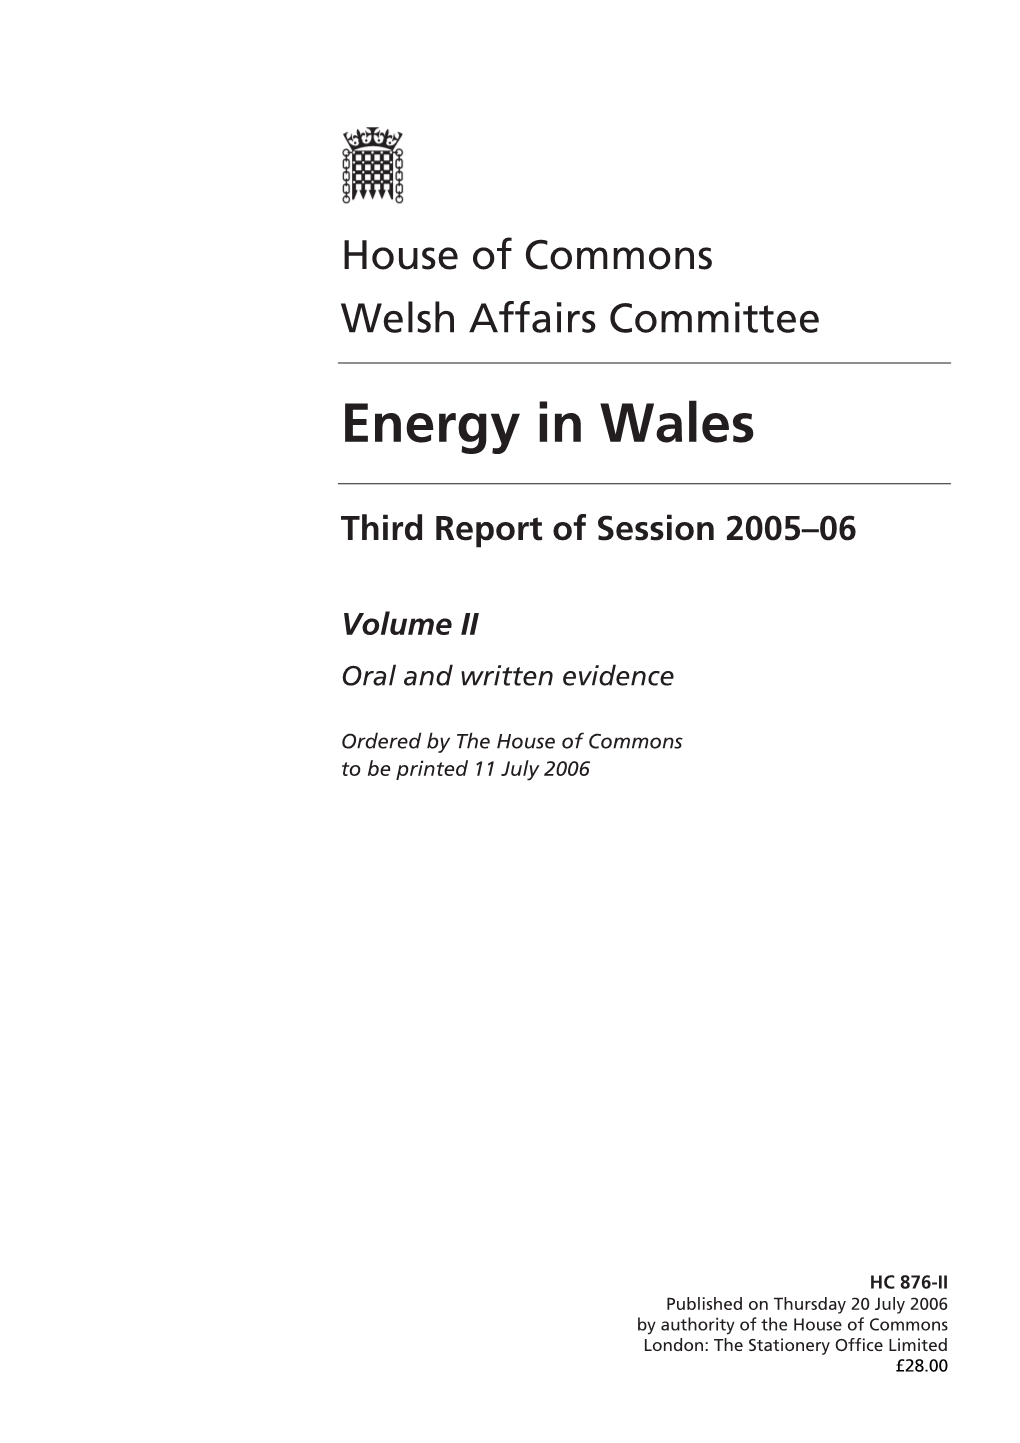 Energy in Wales